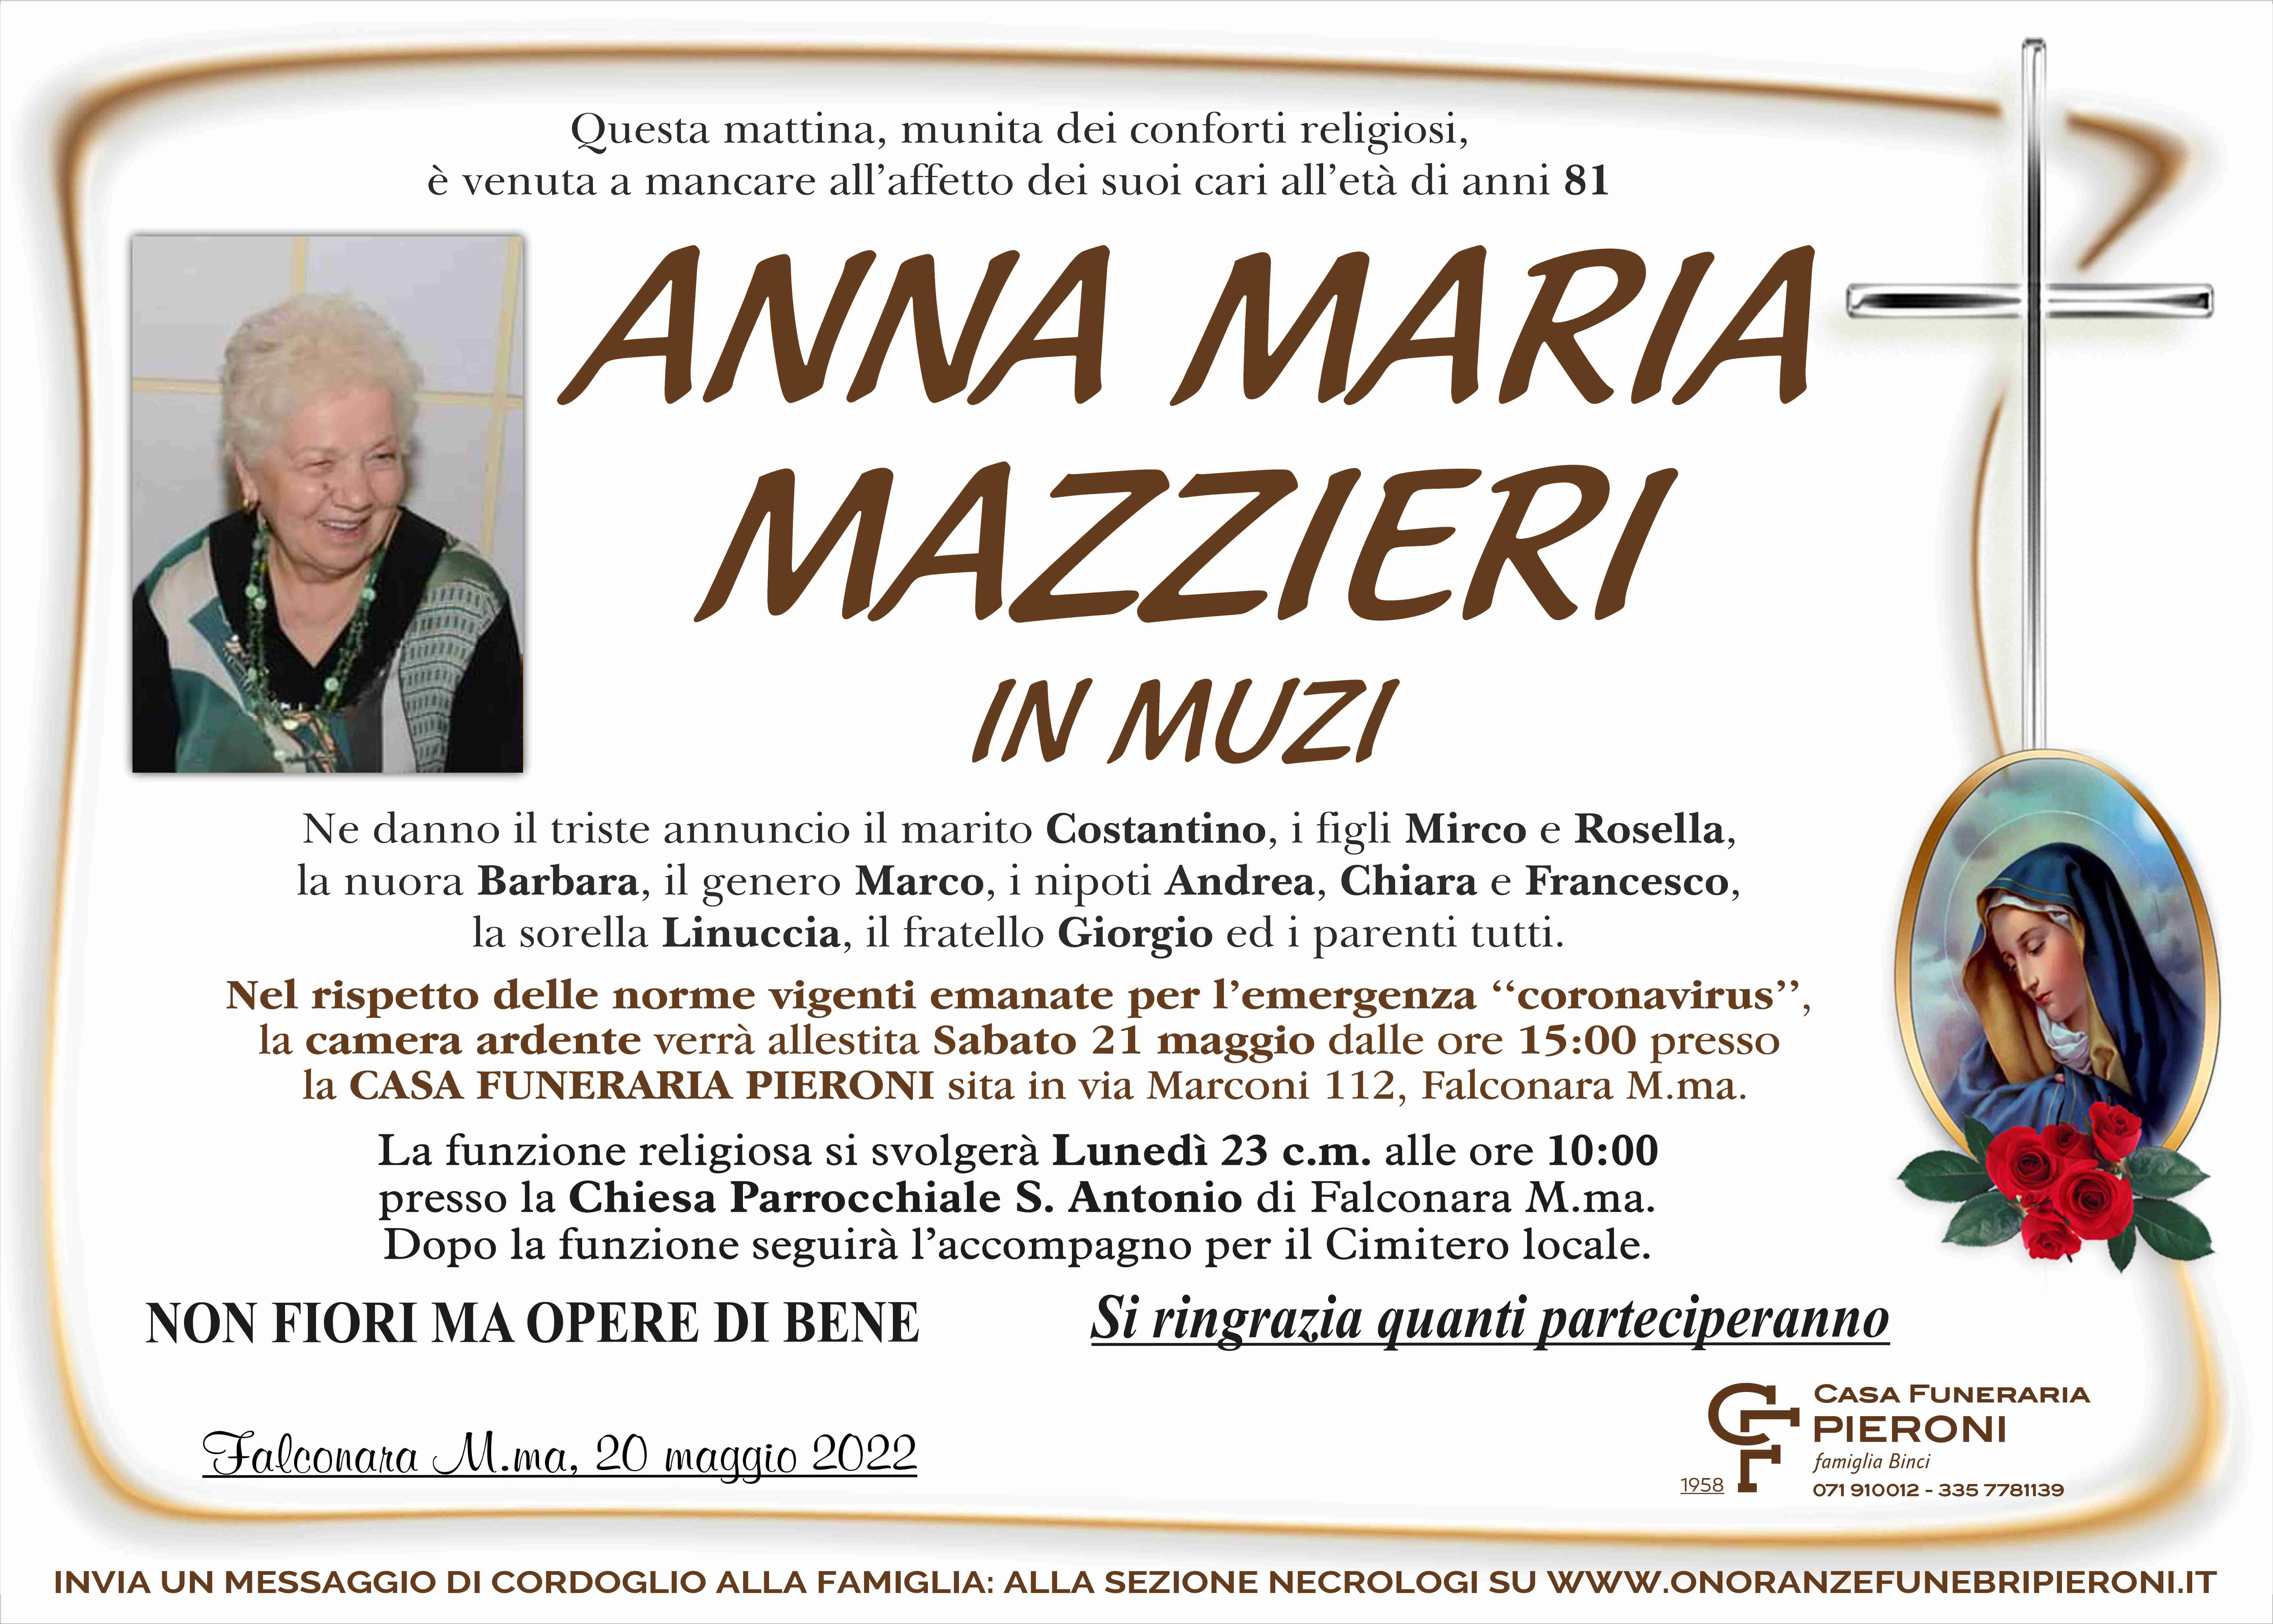 Anna Maria Mazzieri